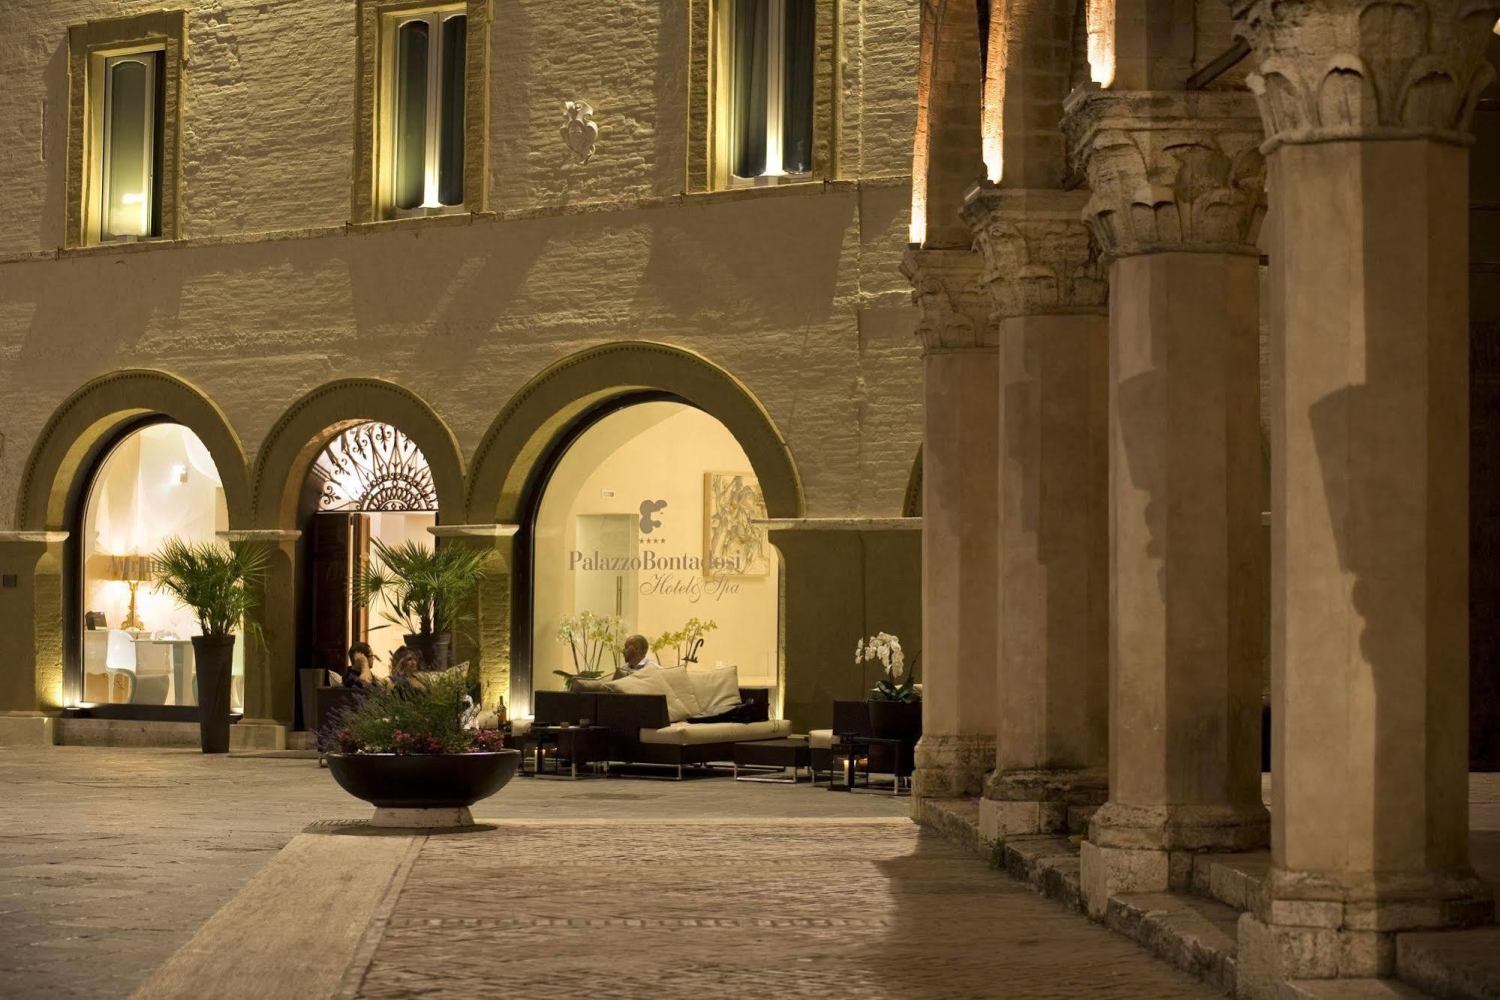 Palazzo Bontadosi Montefalco, Umbria - Italy